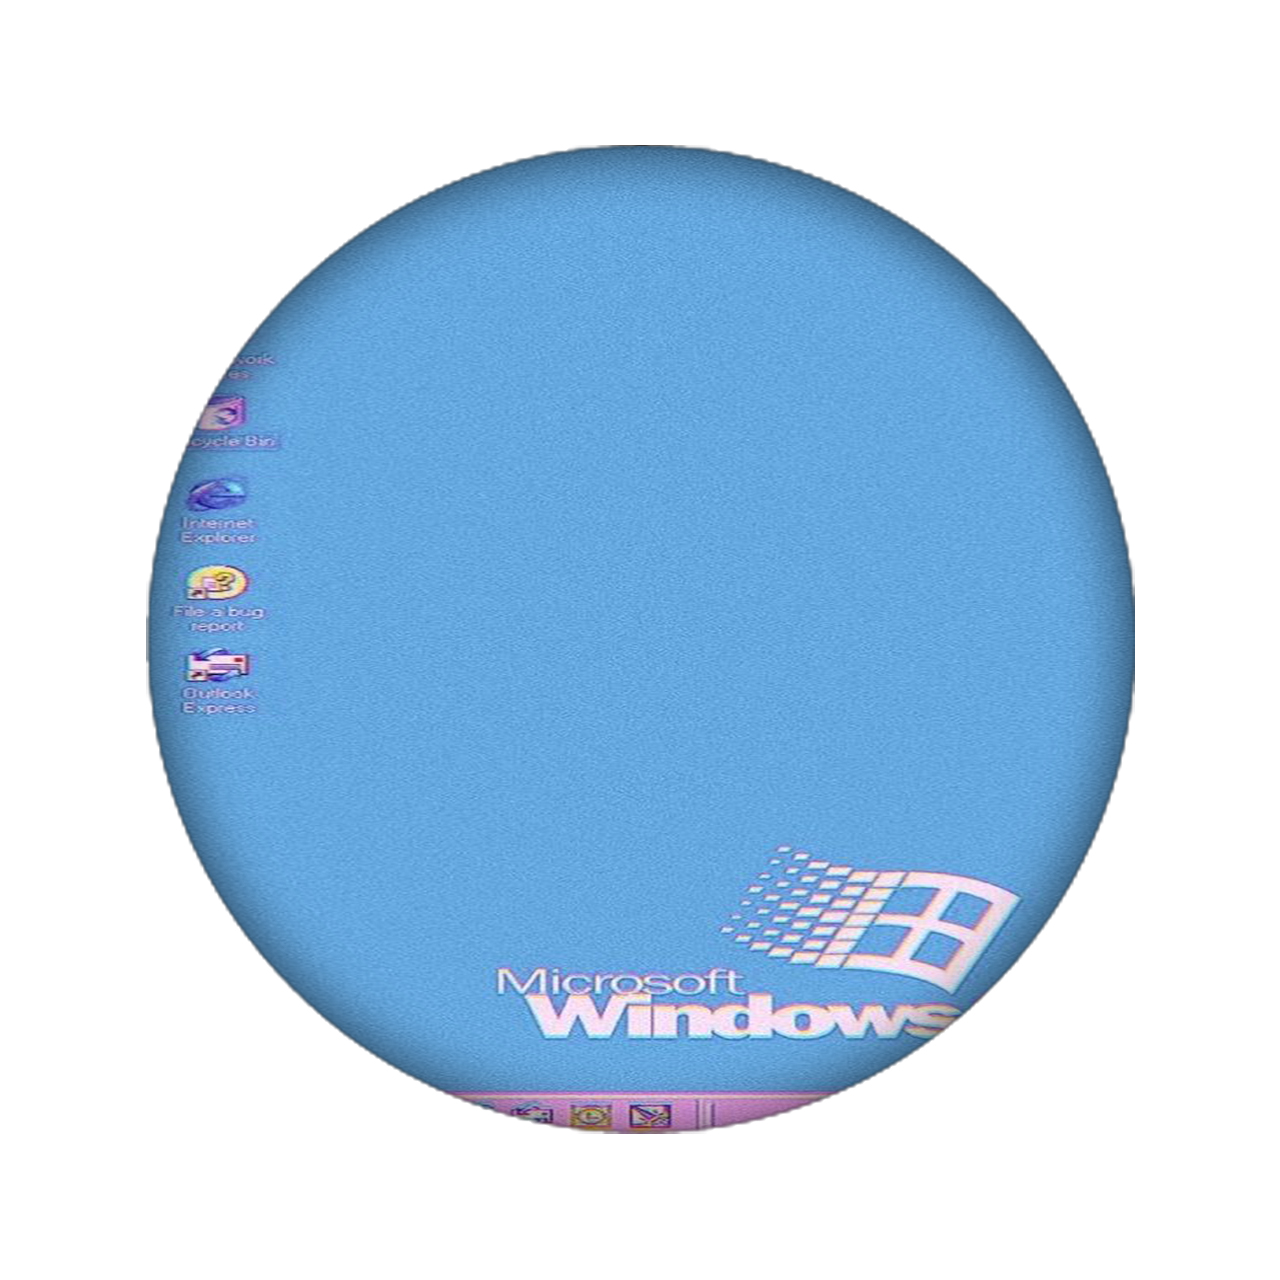 برچسب کنسول بازی مدل WINDOWS کد 2146